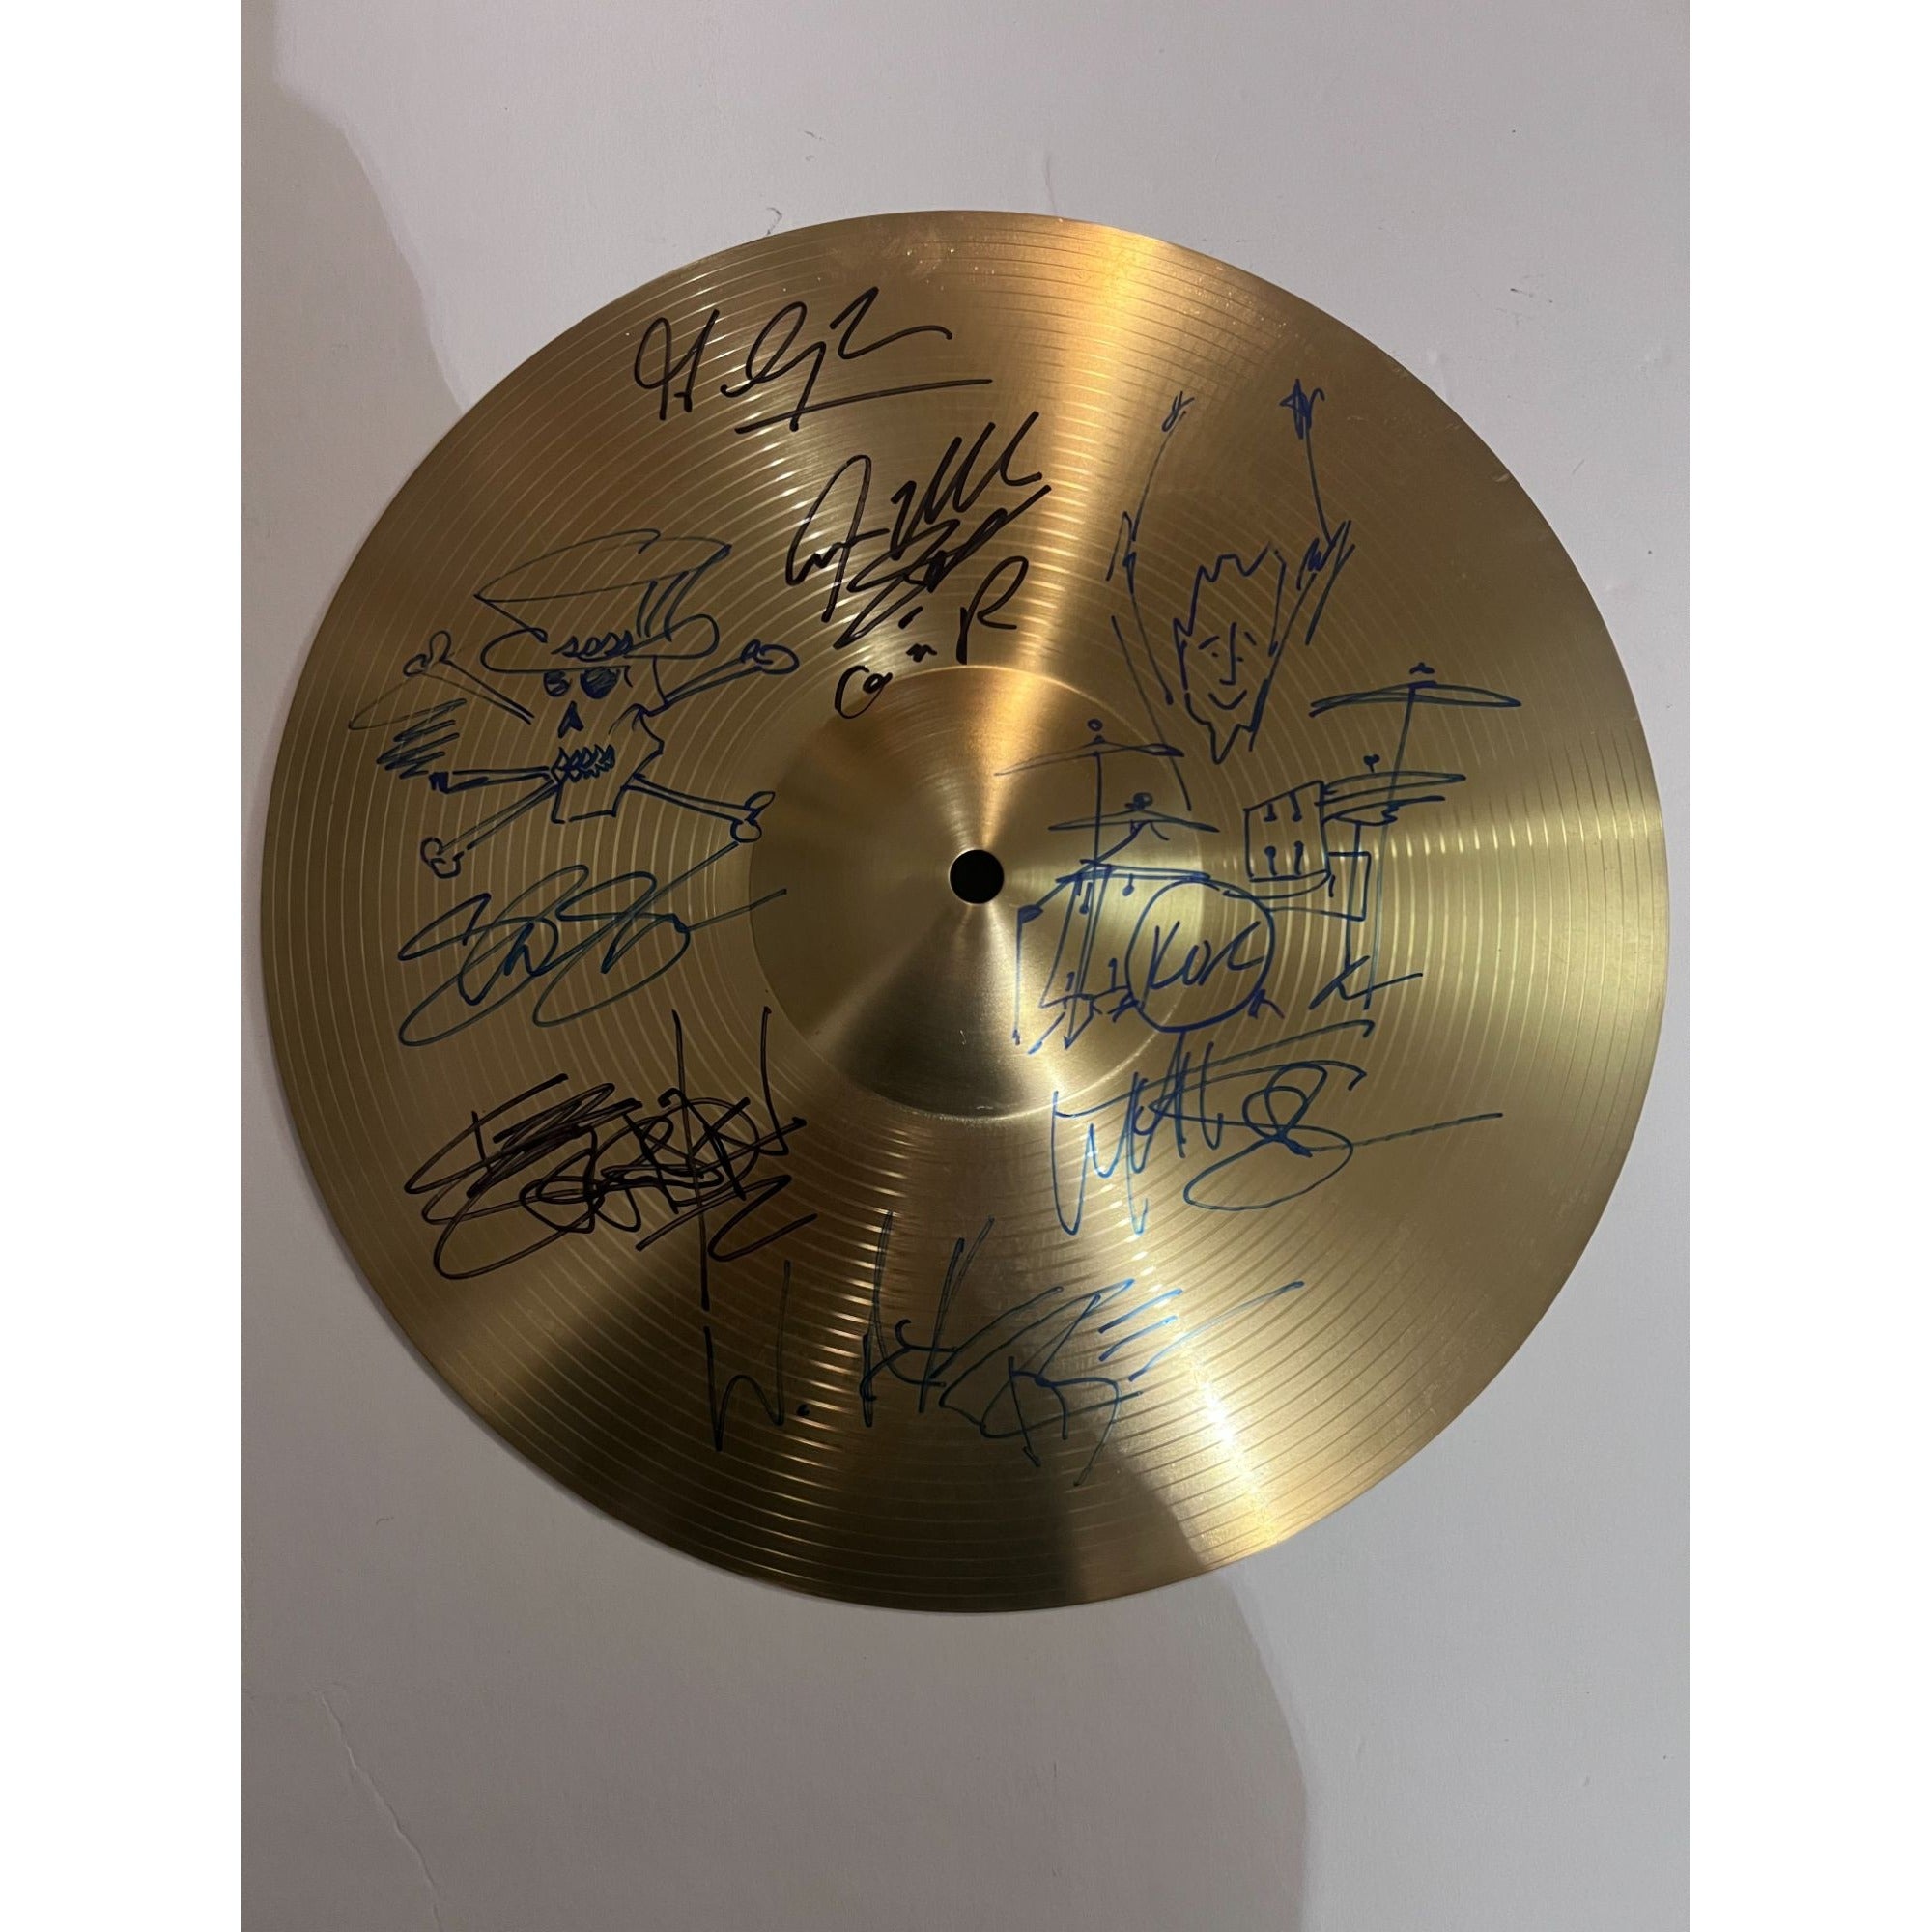 Guns n' Roses Slash, Axl Rose, Duff, Steven Adler, Matt Sorum, Izzy Stradlin, Gilby Clark one-of-a-kind cymbal signed with proof